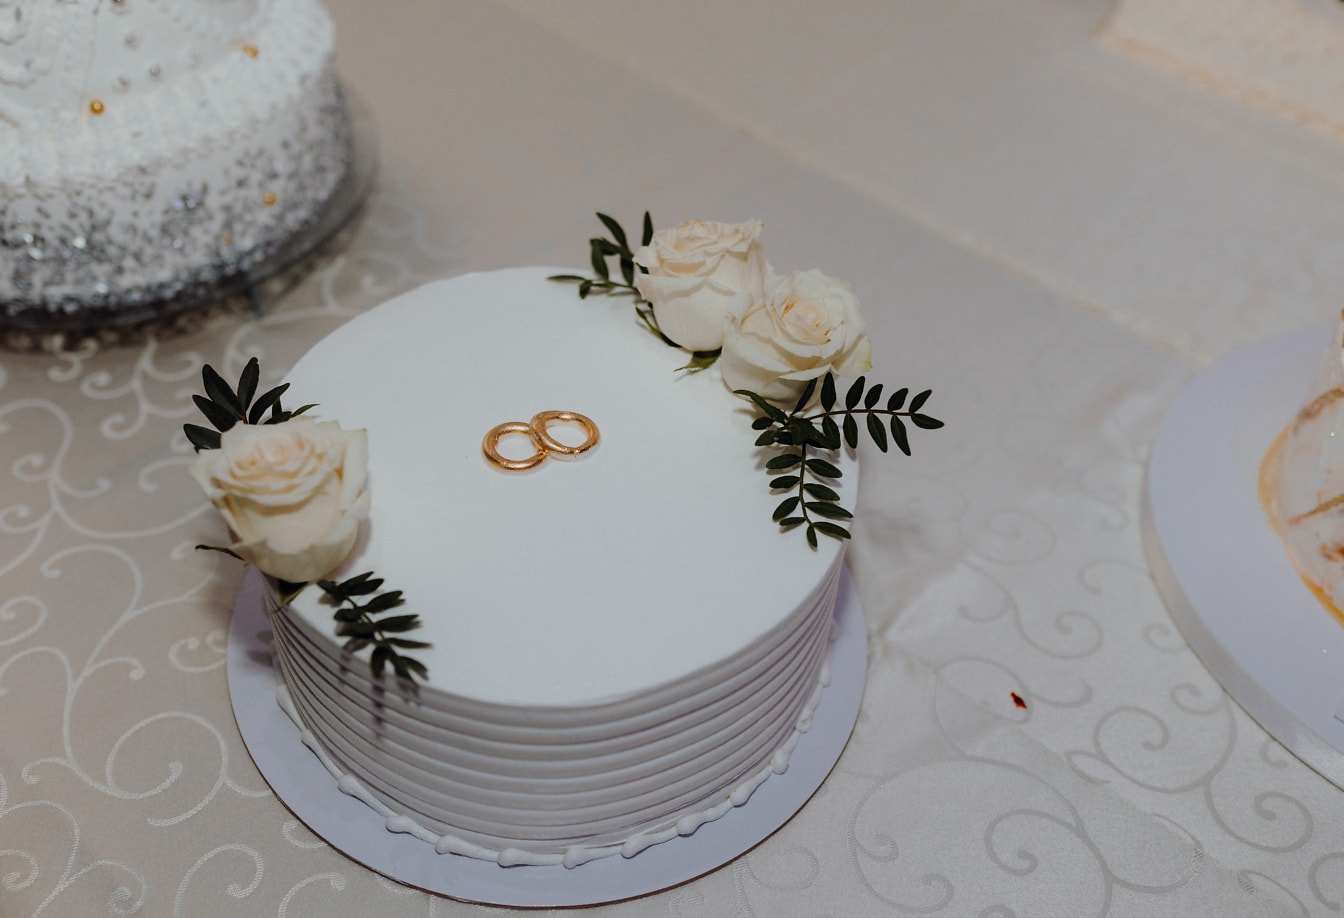 Üstünde altın alyanslar ve dekorasyon olarak beyaz güller bulunan beyaz düğün pastası